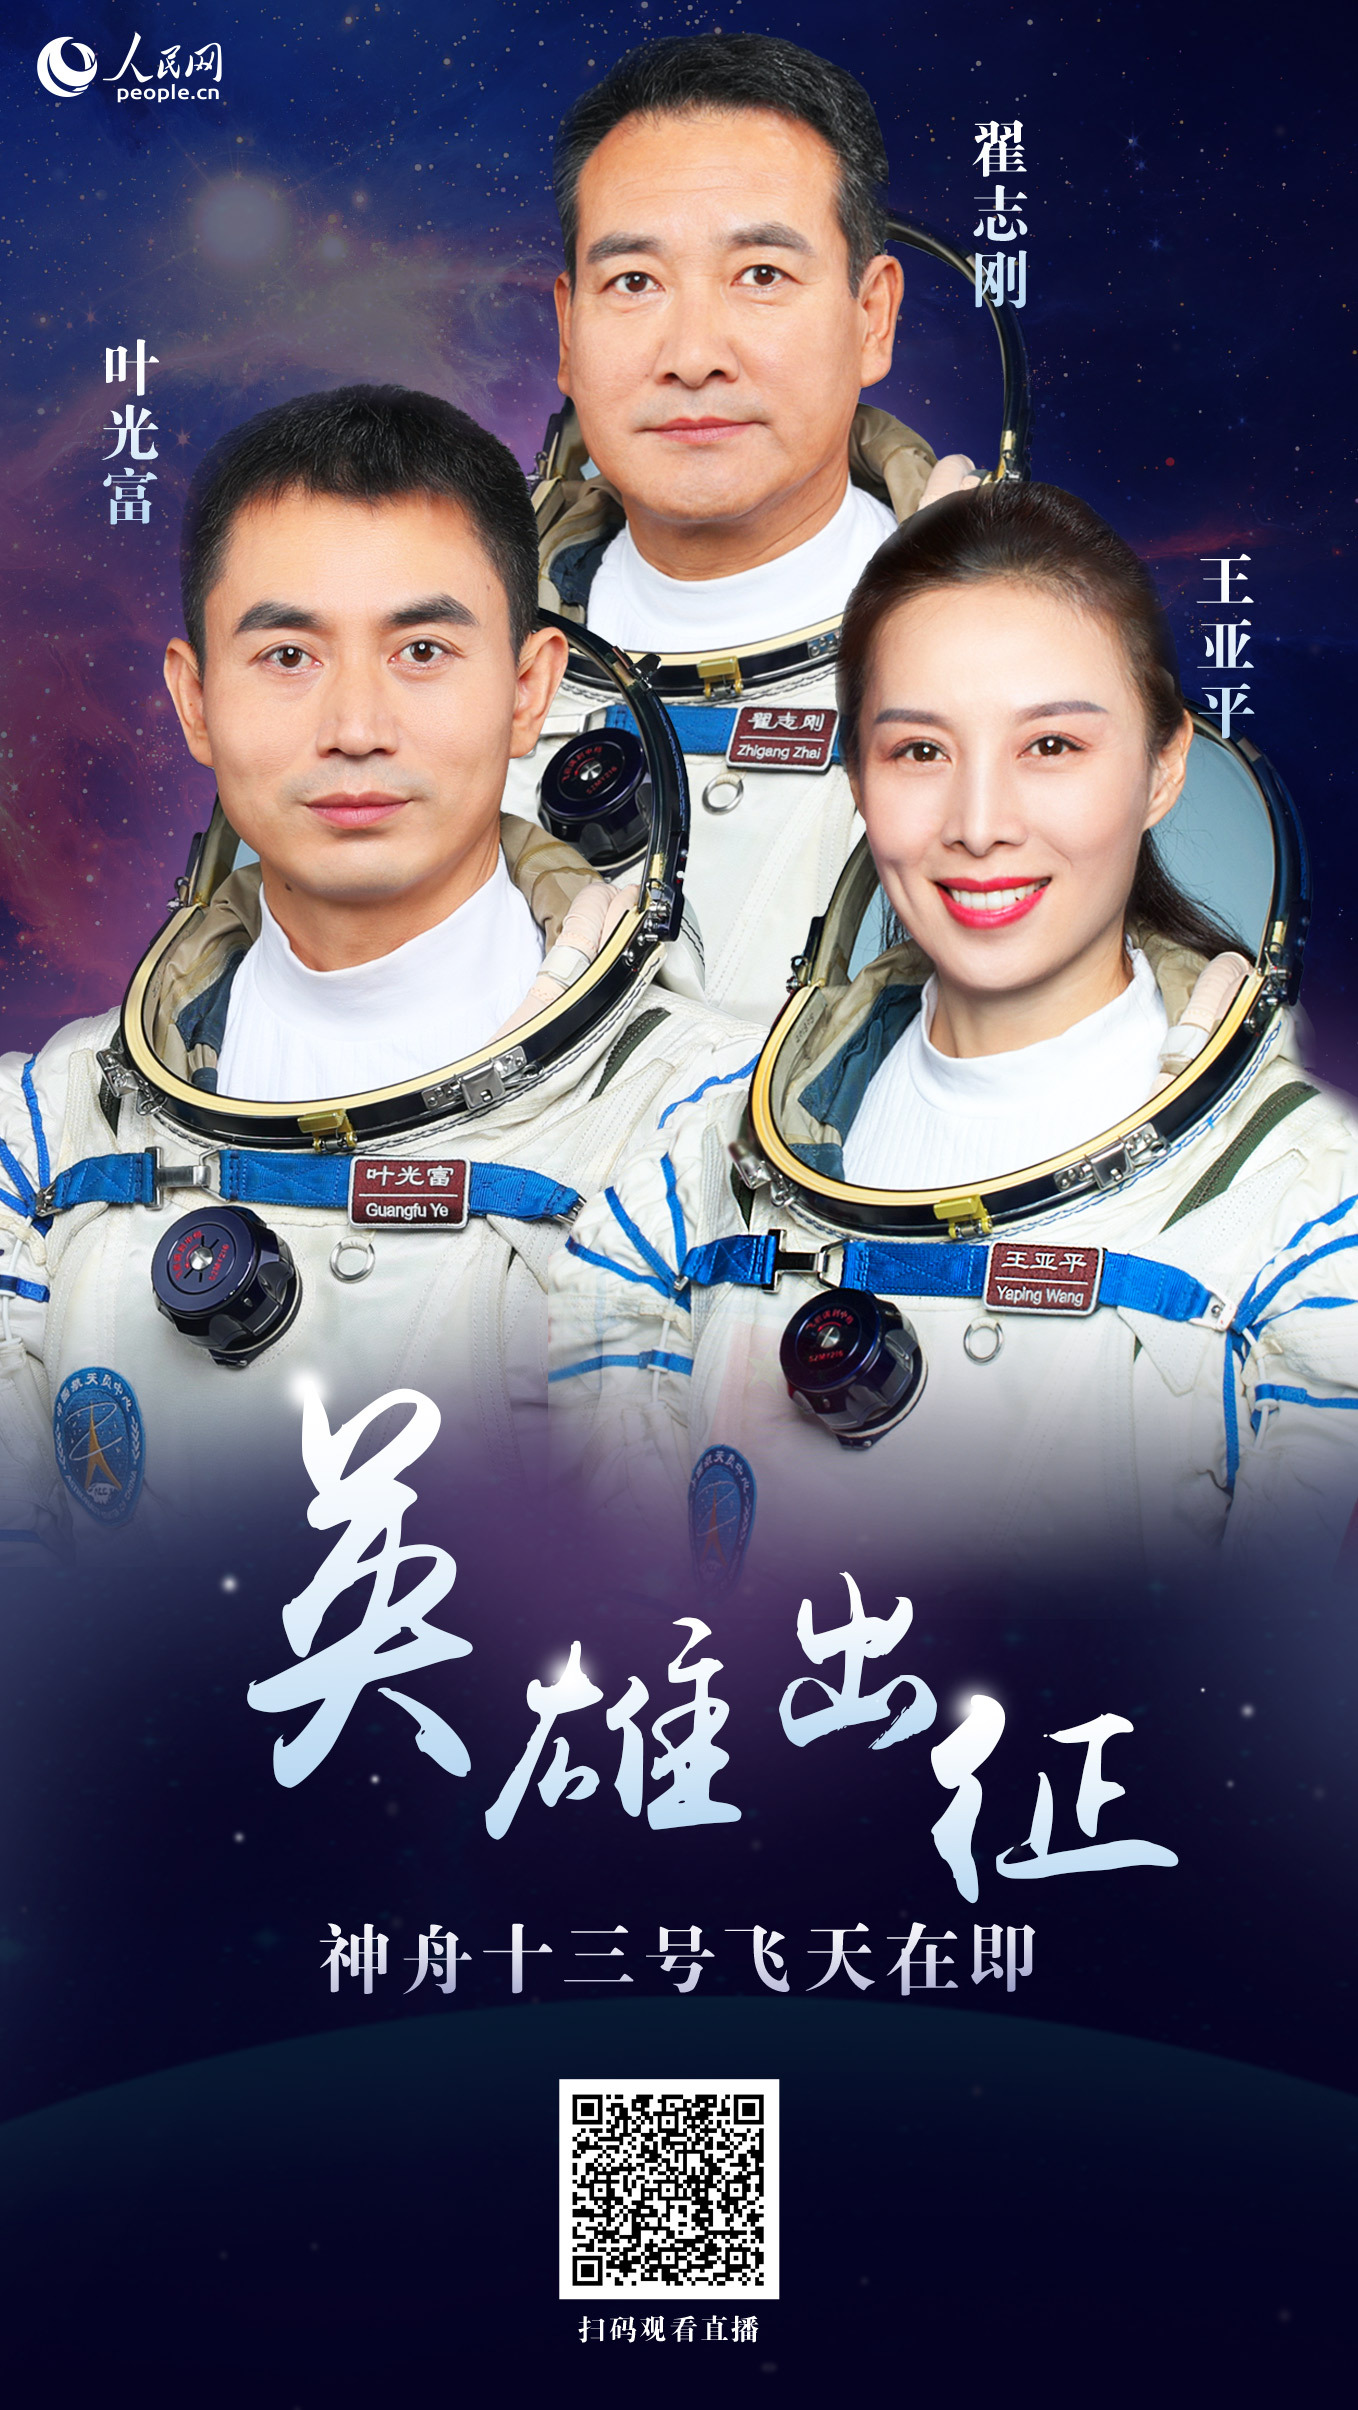 中国人首次在太空跨年 神舟十三号航天员乘组祝大家新年快乐_凤凰网视频_凤凰网